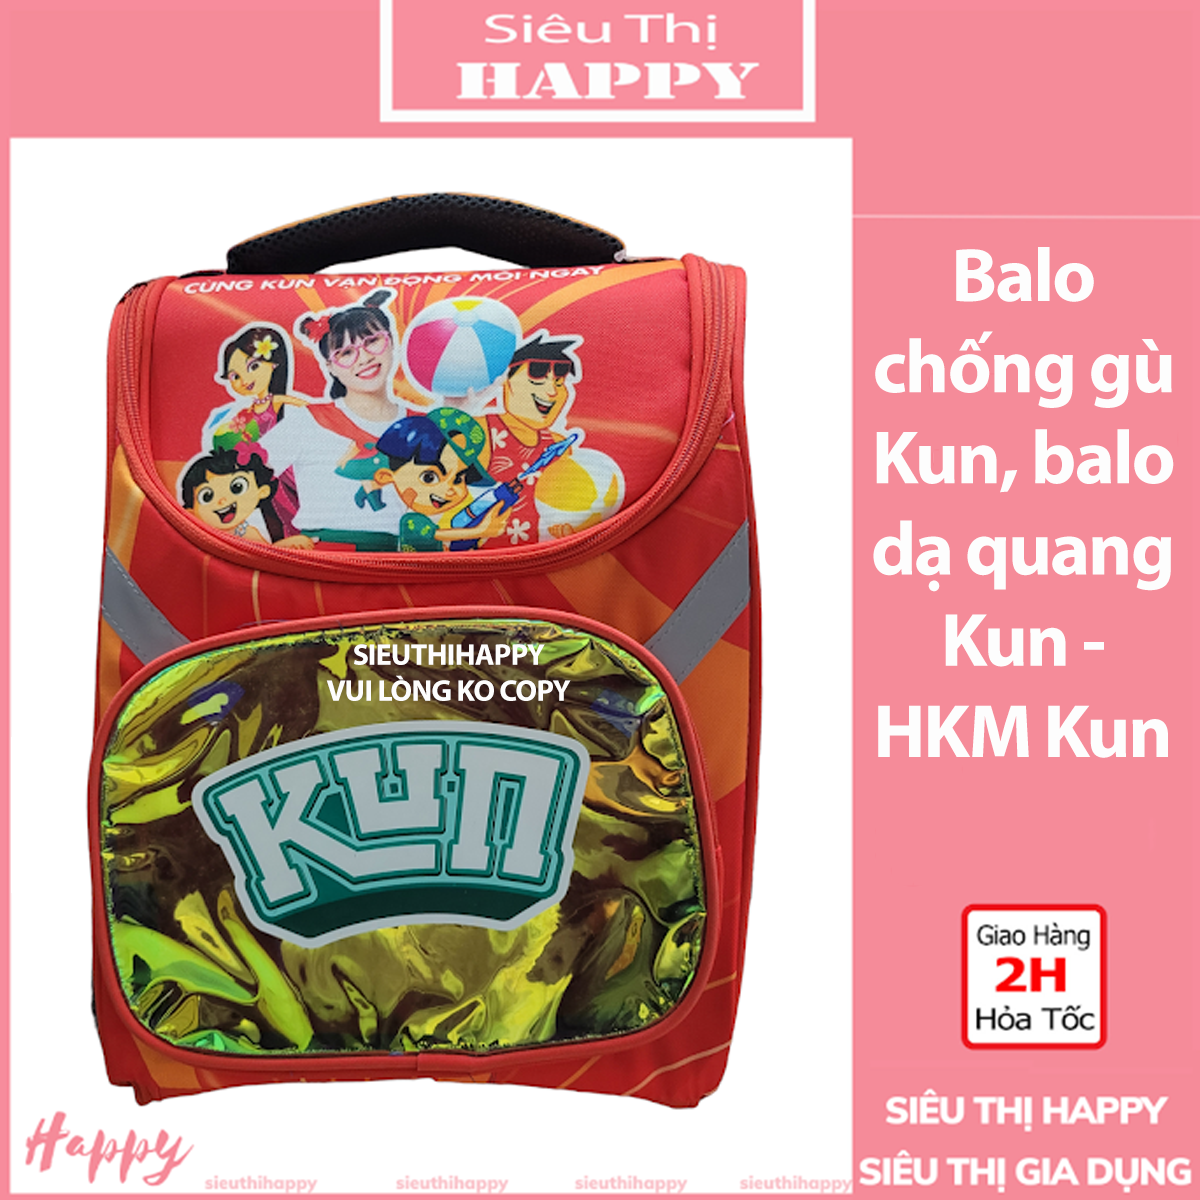 SIÊU THỊ HAPPY Balo chống gù Kun, balo dạ quang Kun - HKM Kun.